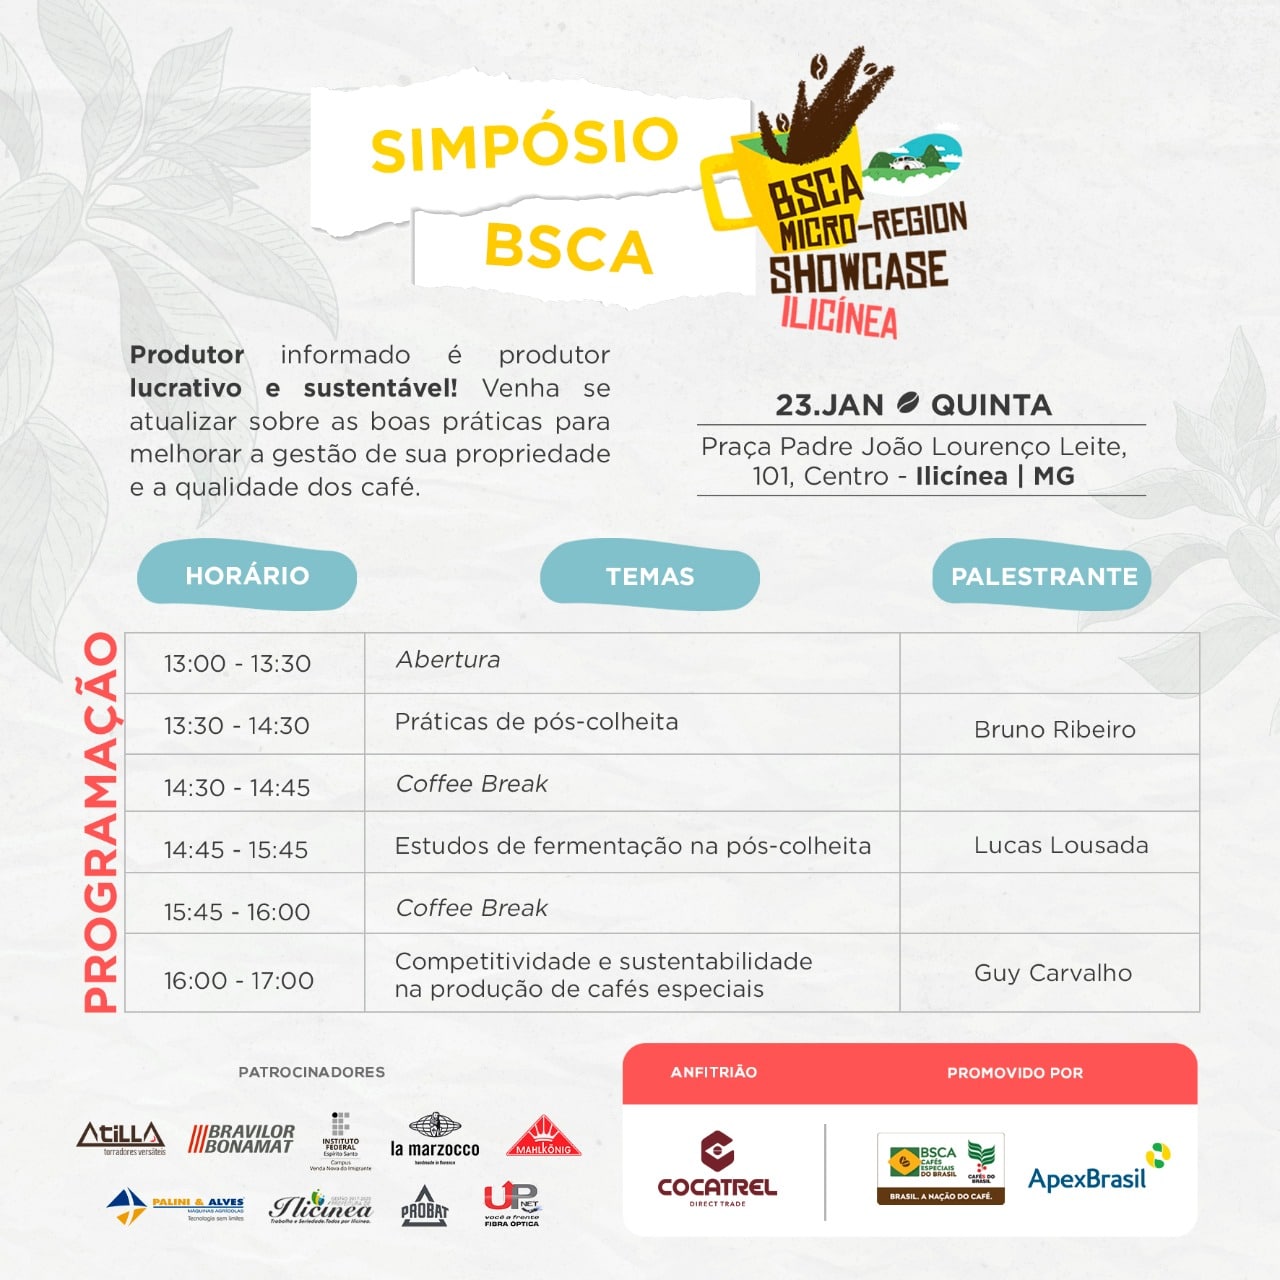 BSCA e Cocatrel promovem o evento “Micro-Region Showcase – Ilicínea”